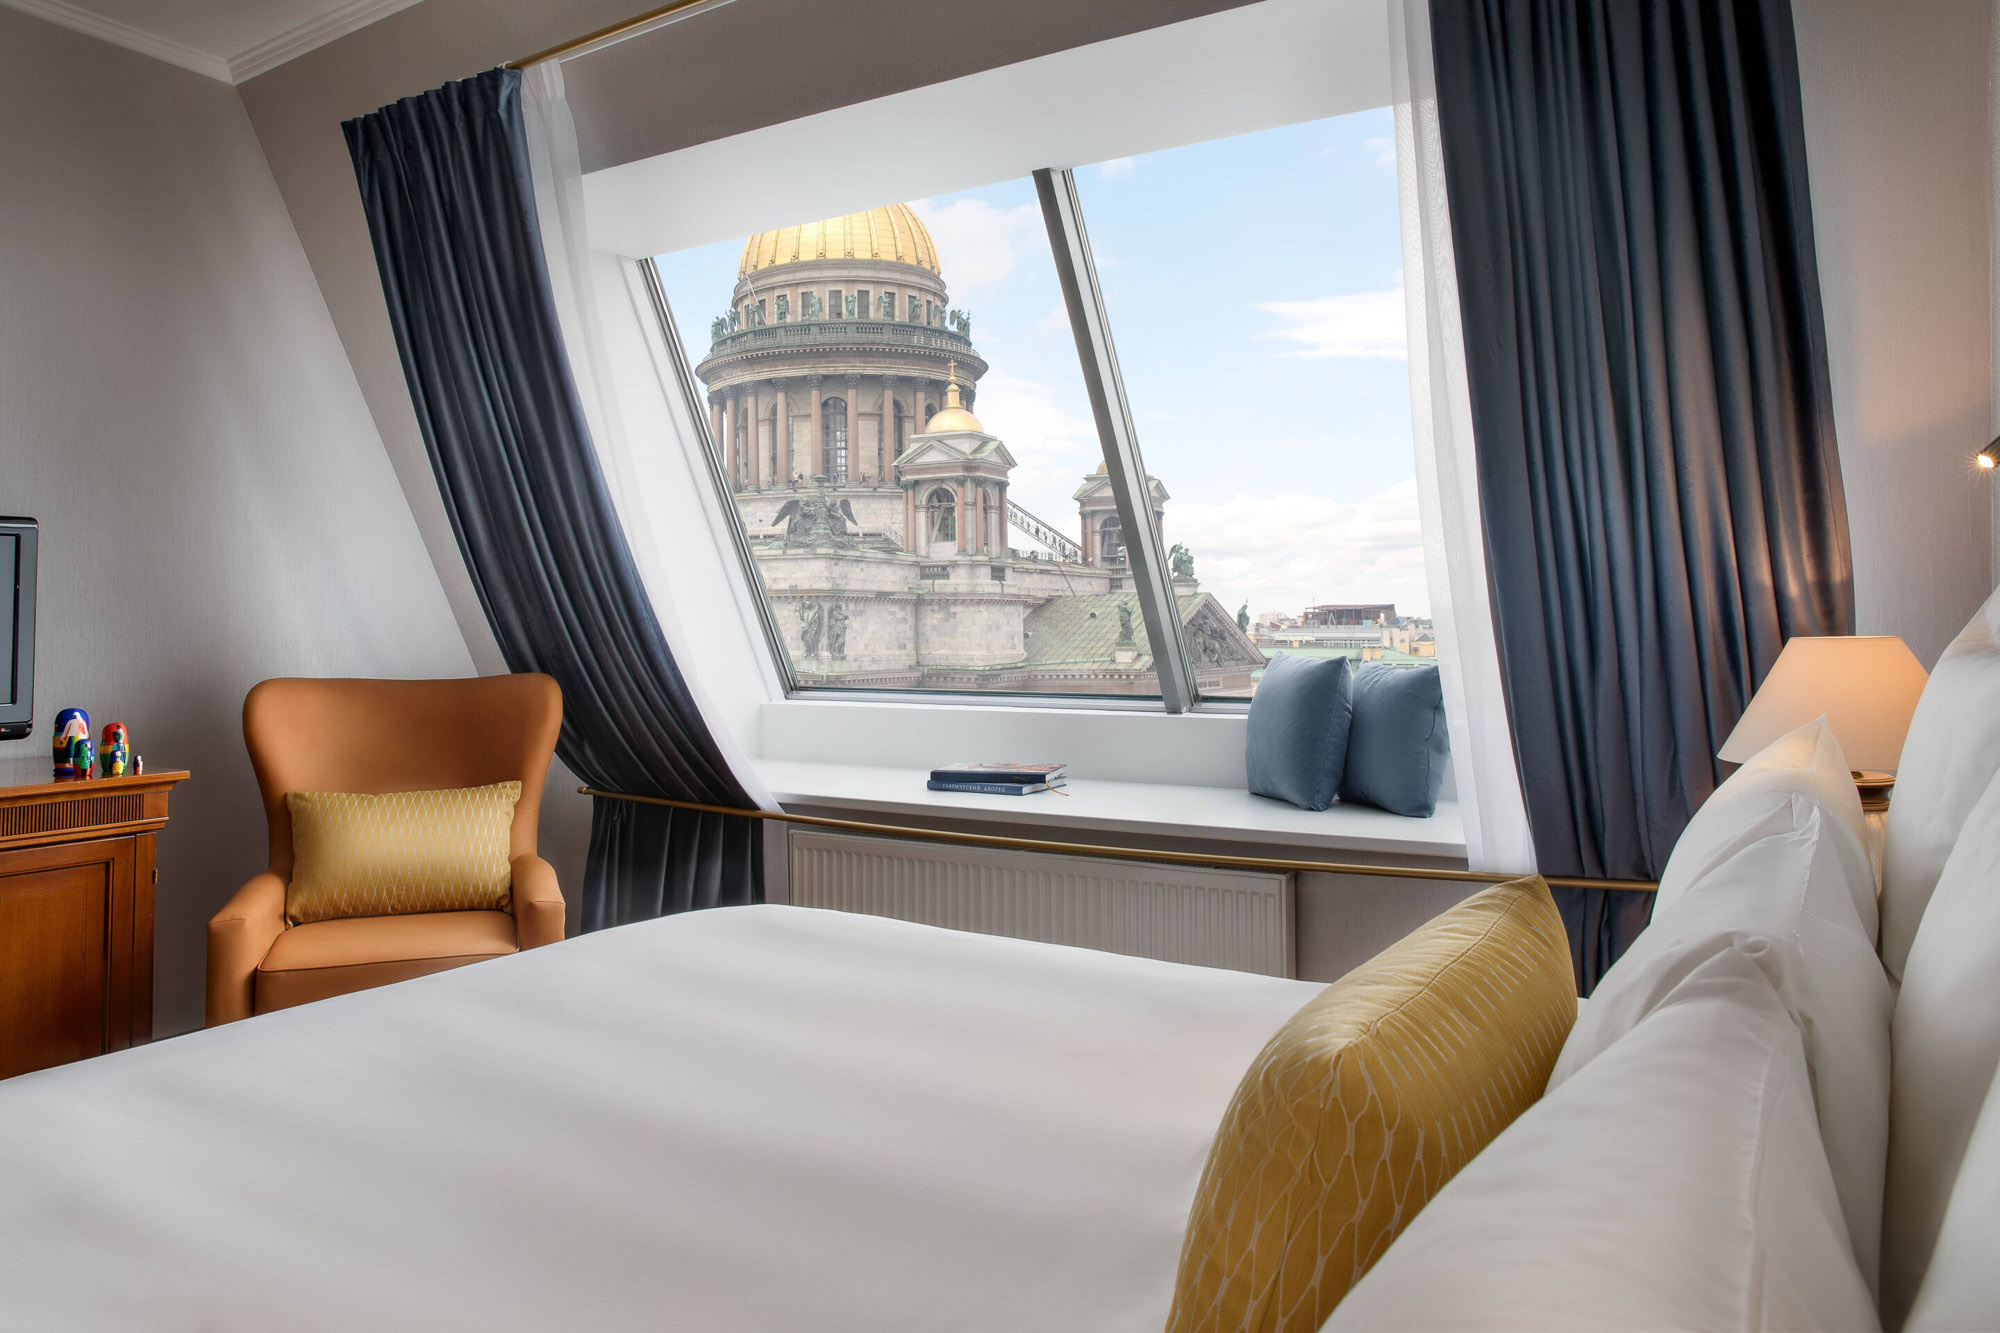 Снять отель в центре или в новых районах Санкт-Петербурга: рассказываем про все плюсы и минусы